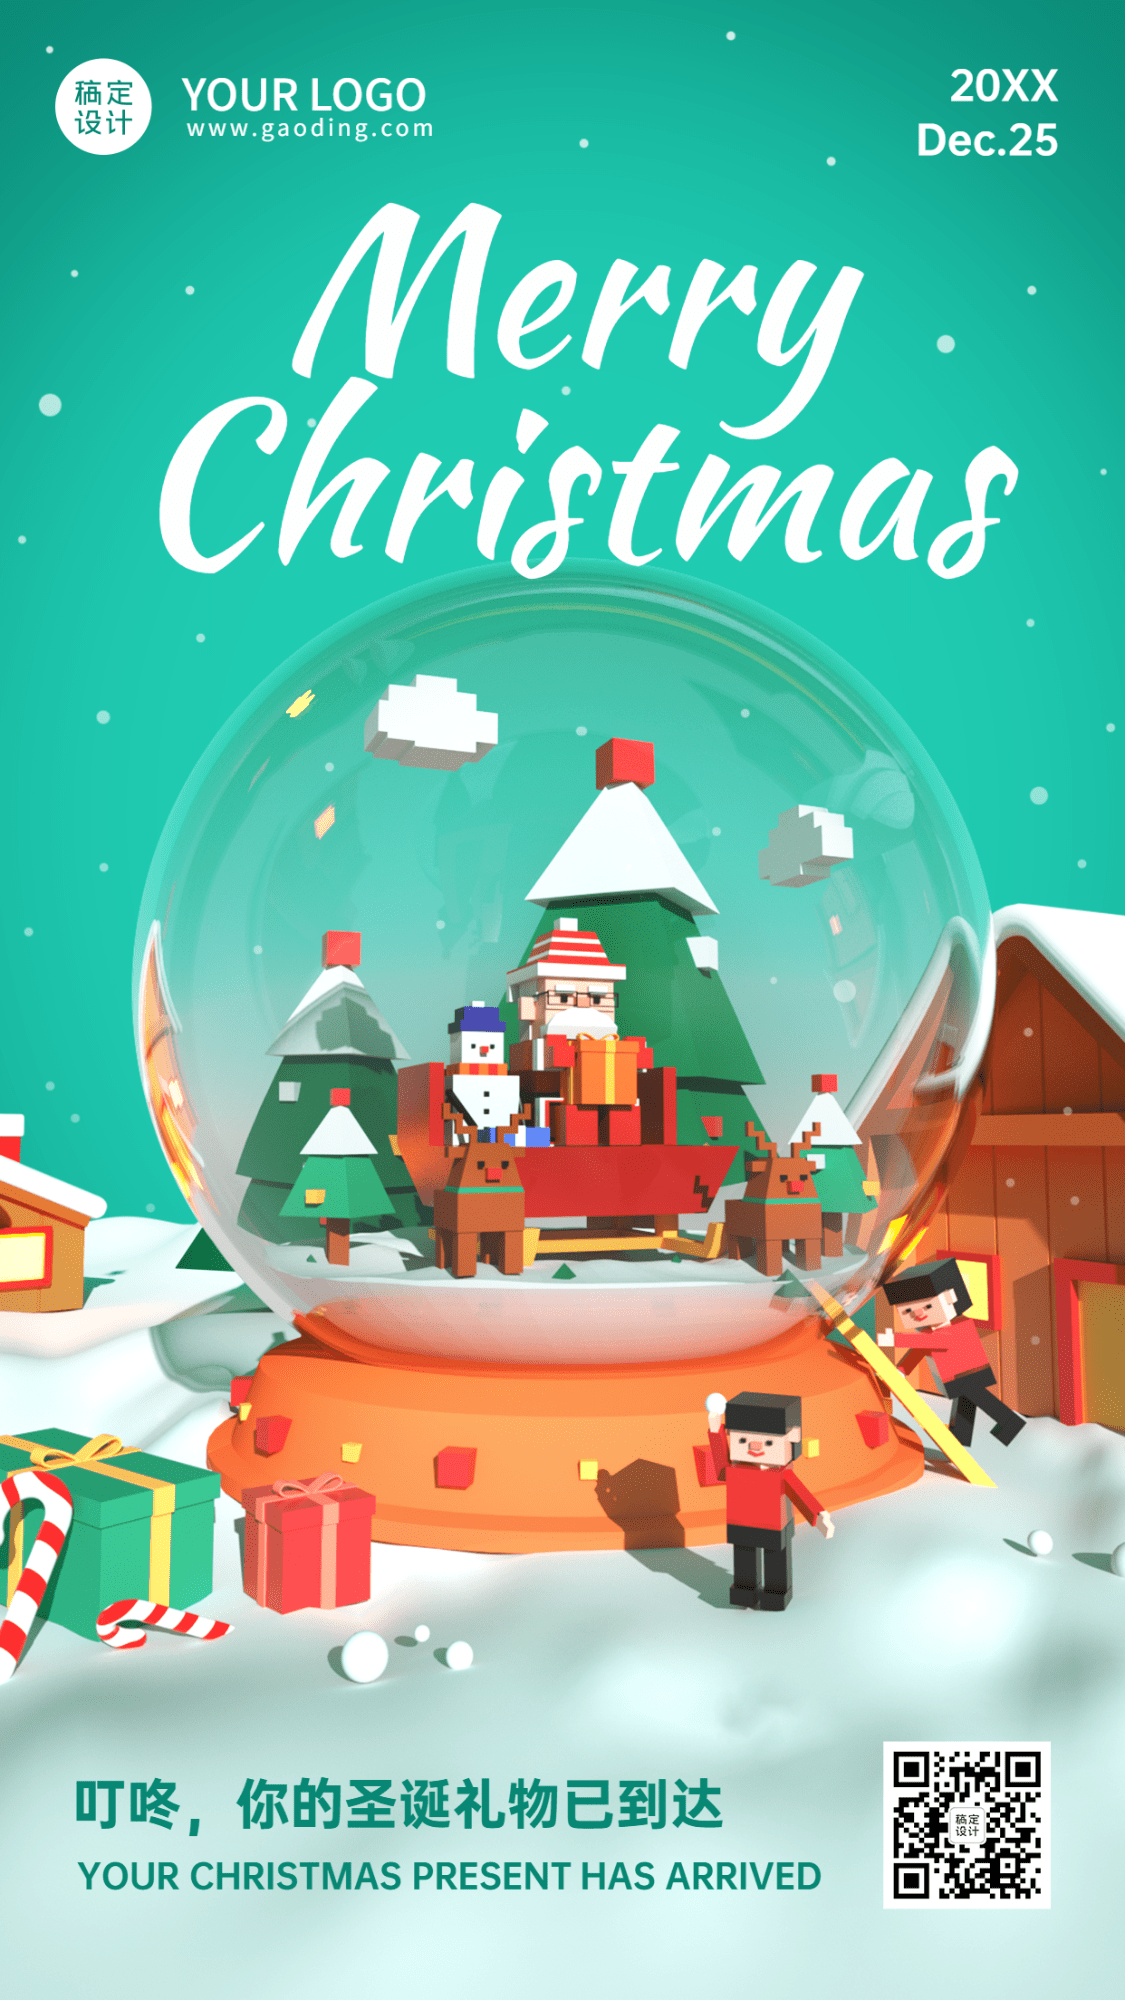 圣诞节祝福水晶球3D创意竖版海报 预览效果